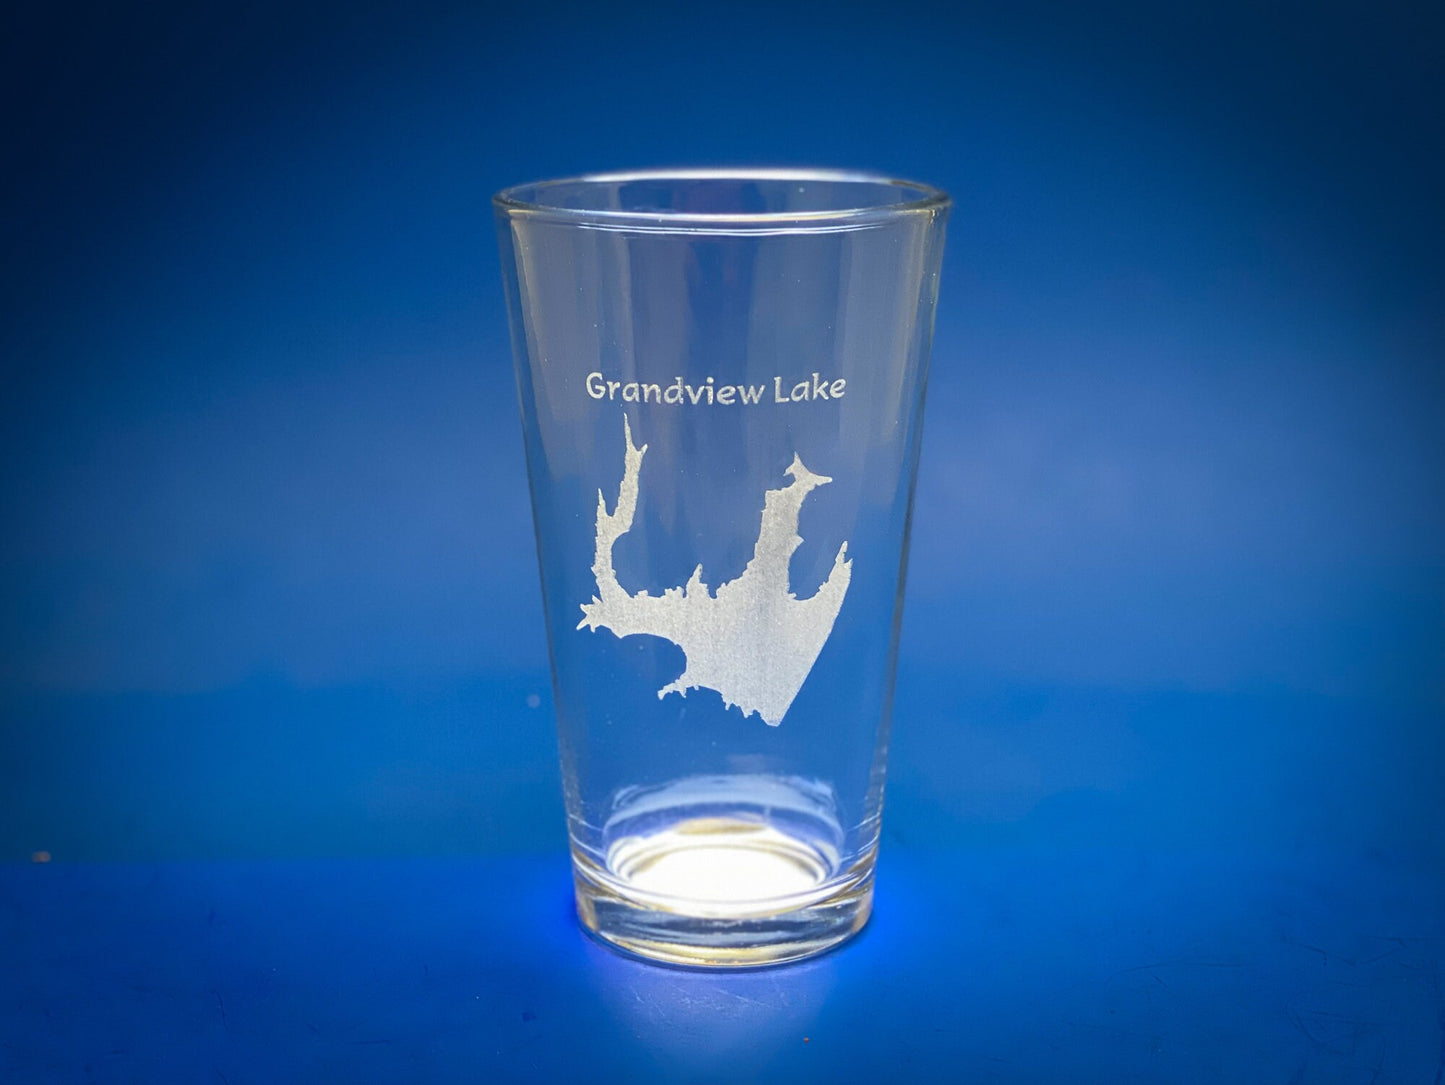 Grandview Lake Indiana - Lake Life- Laser engraved pint glass